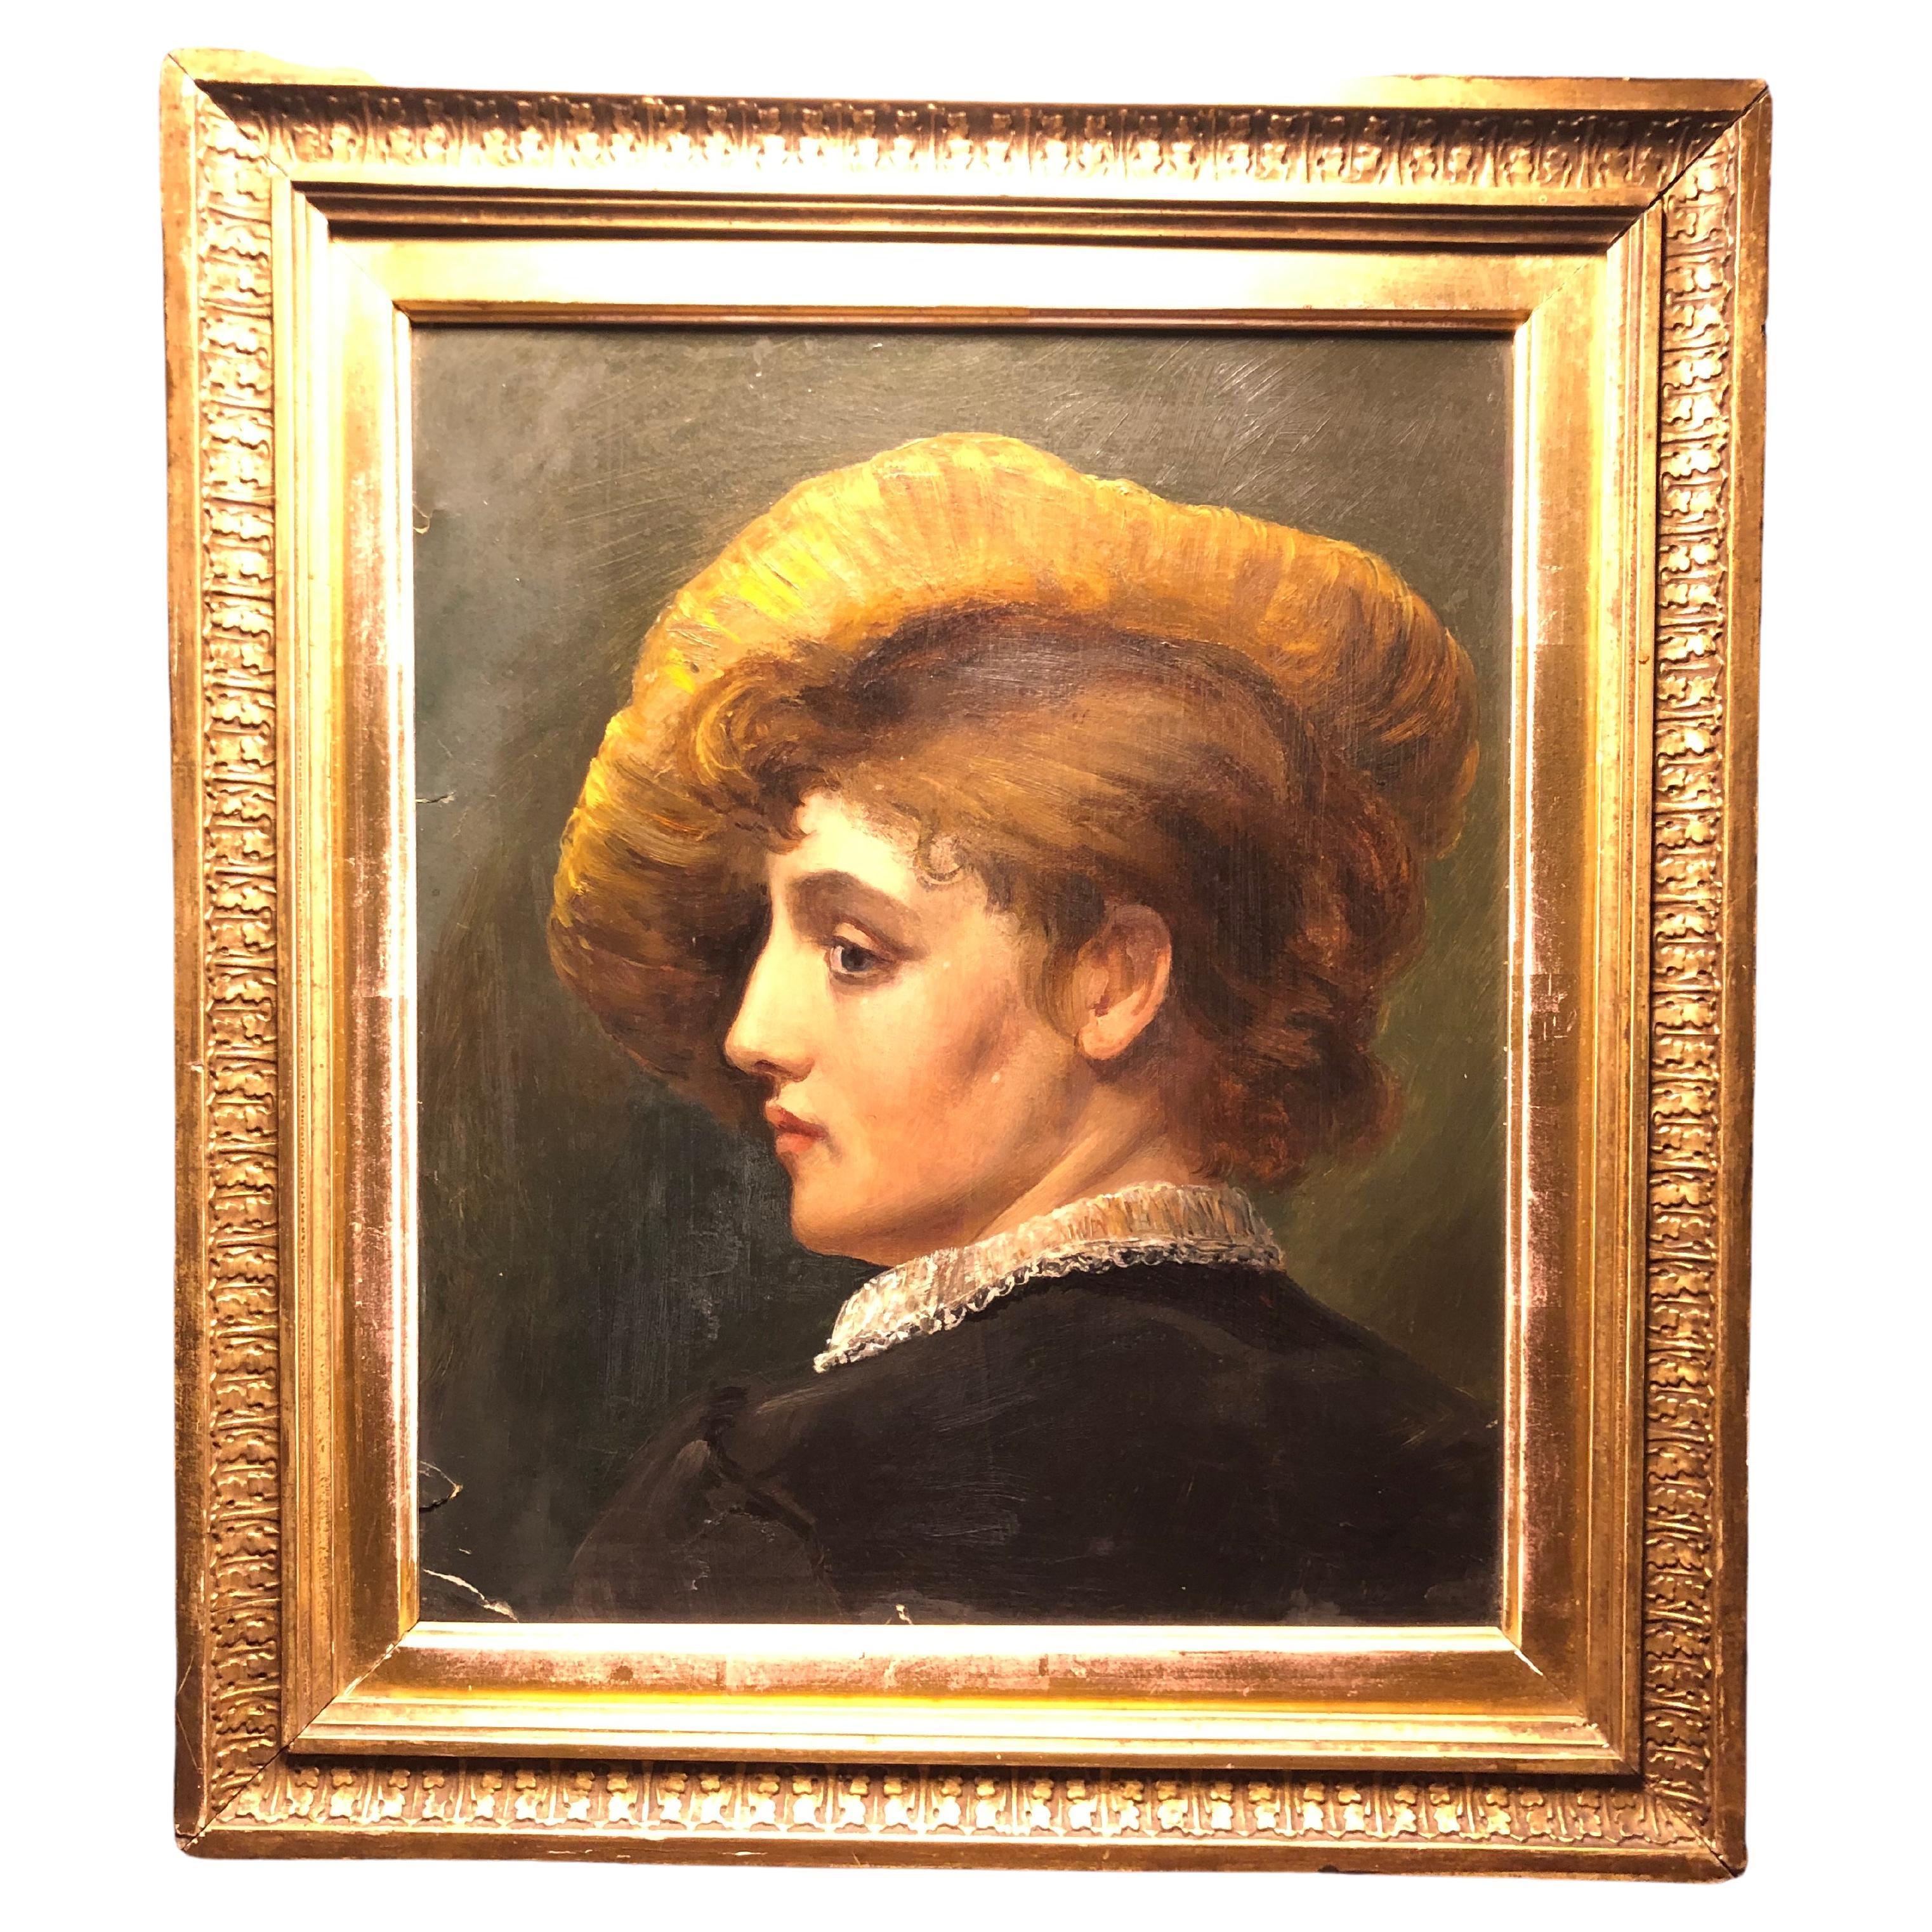 Auffallend schönes antikes Porträt einer Frau mit Hut